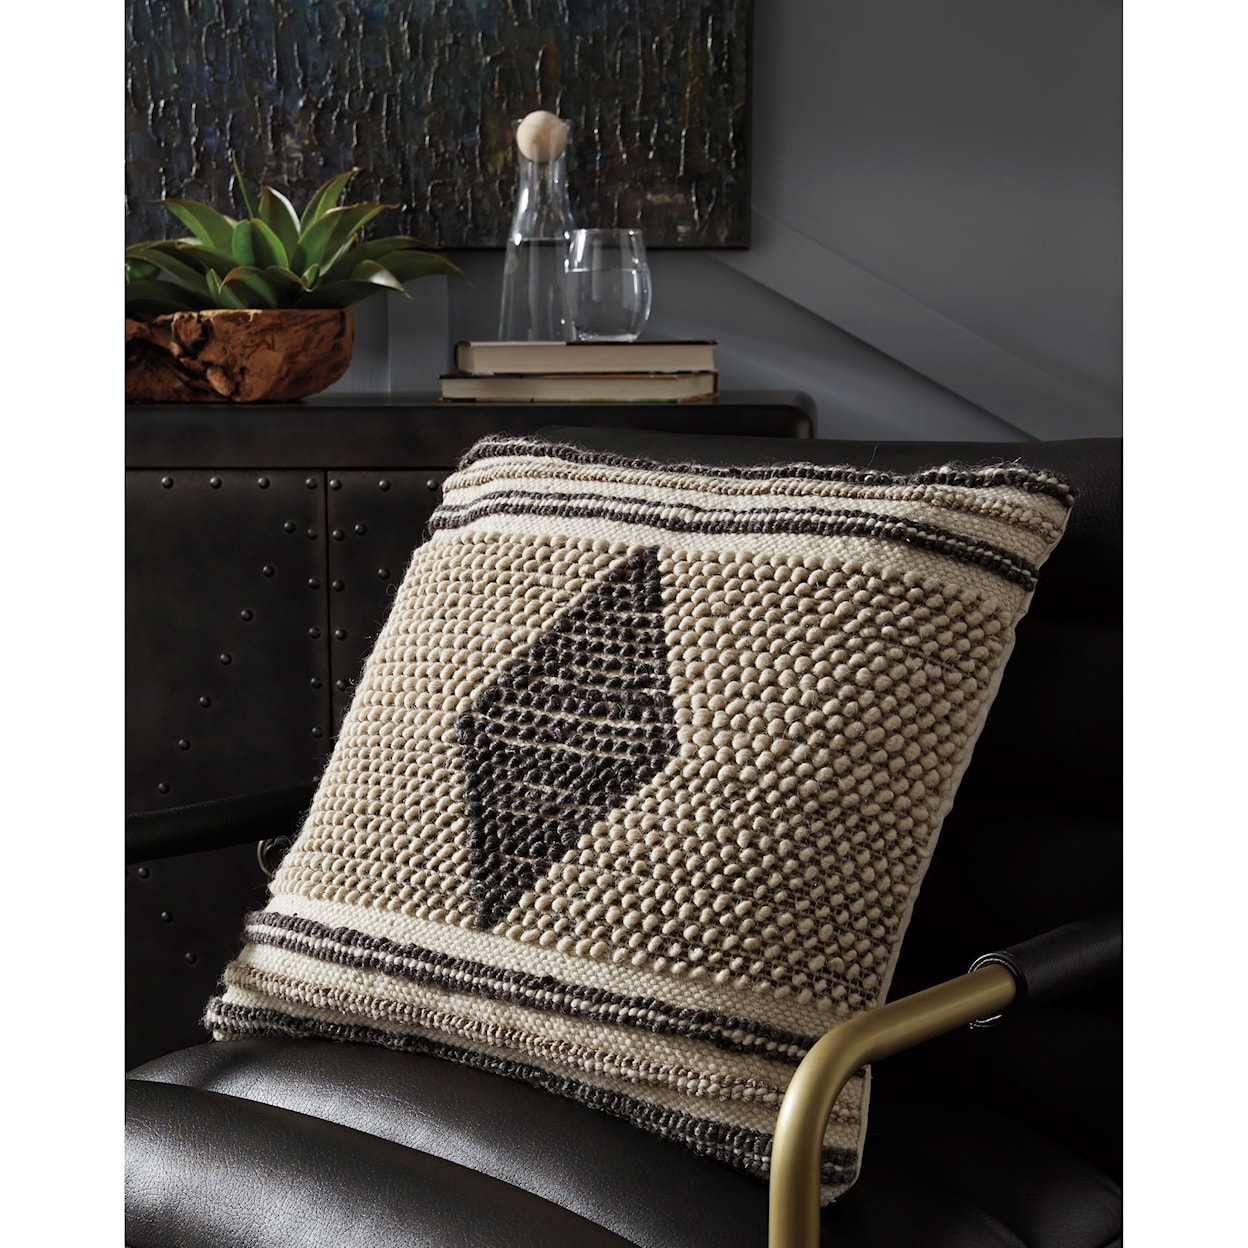 Ashley Furniture Signature Design Ricker Ricker Gray/Cream Pillow